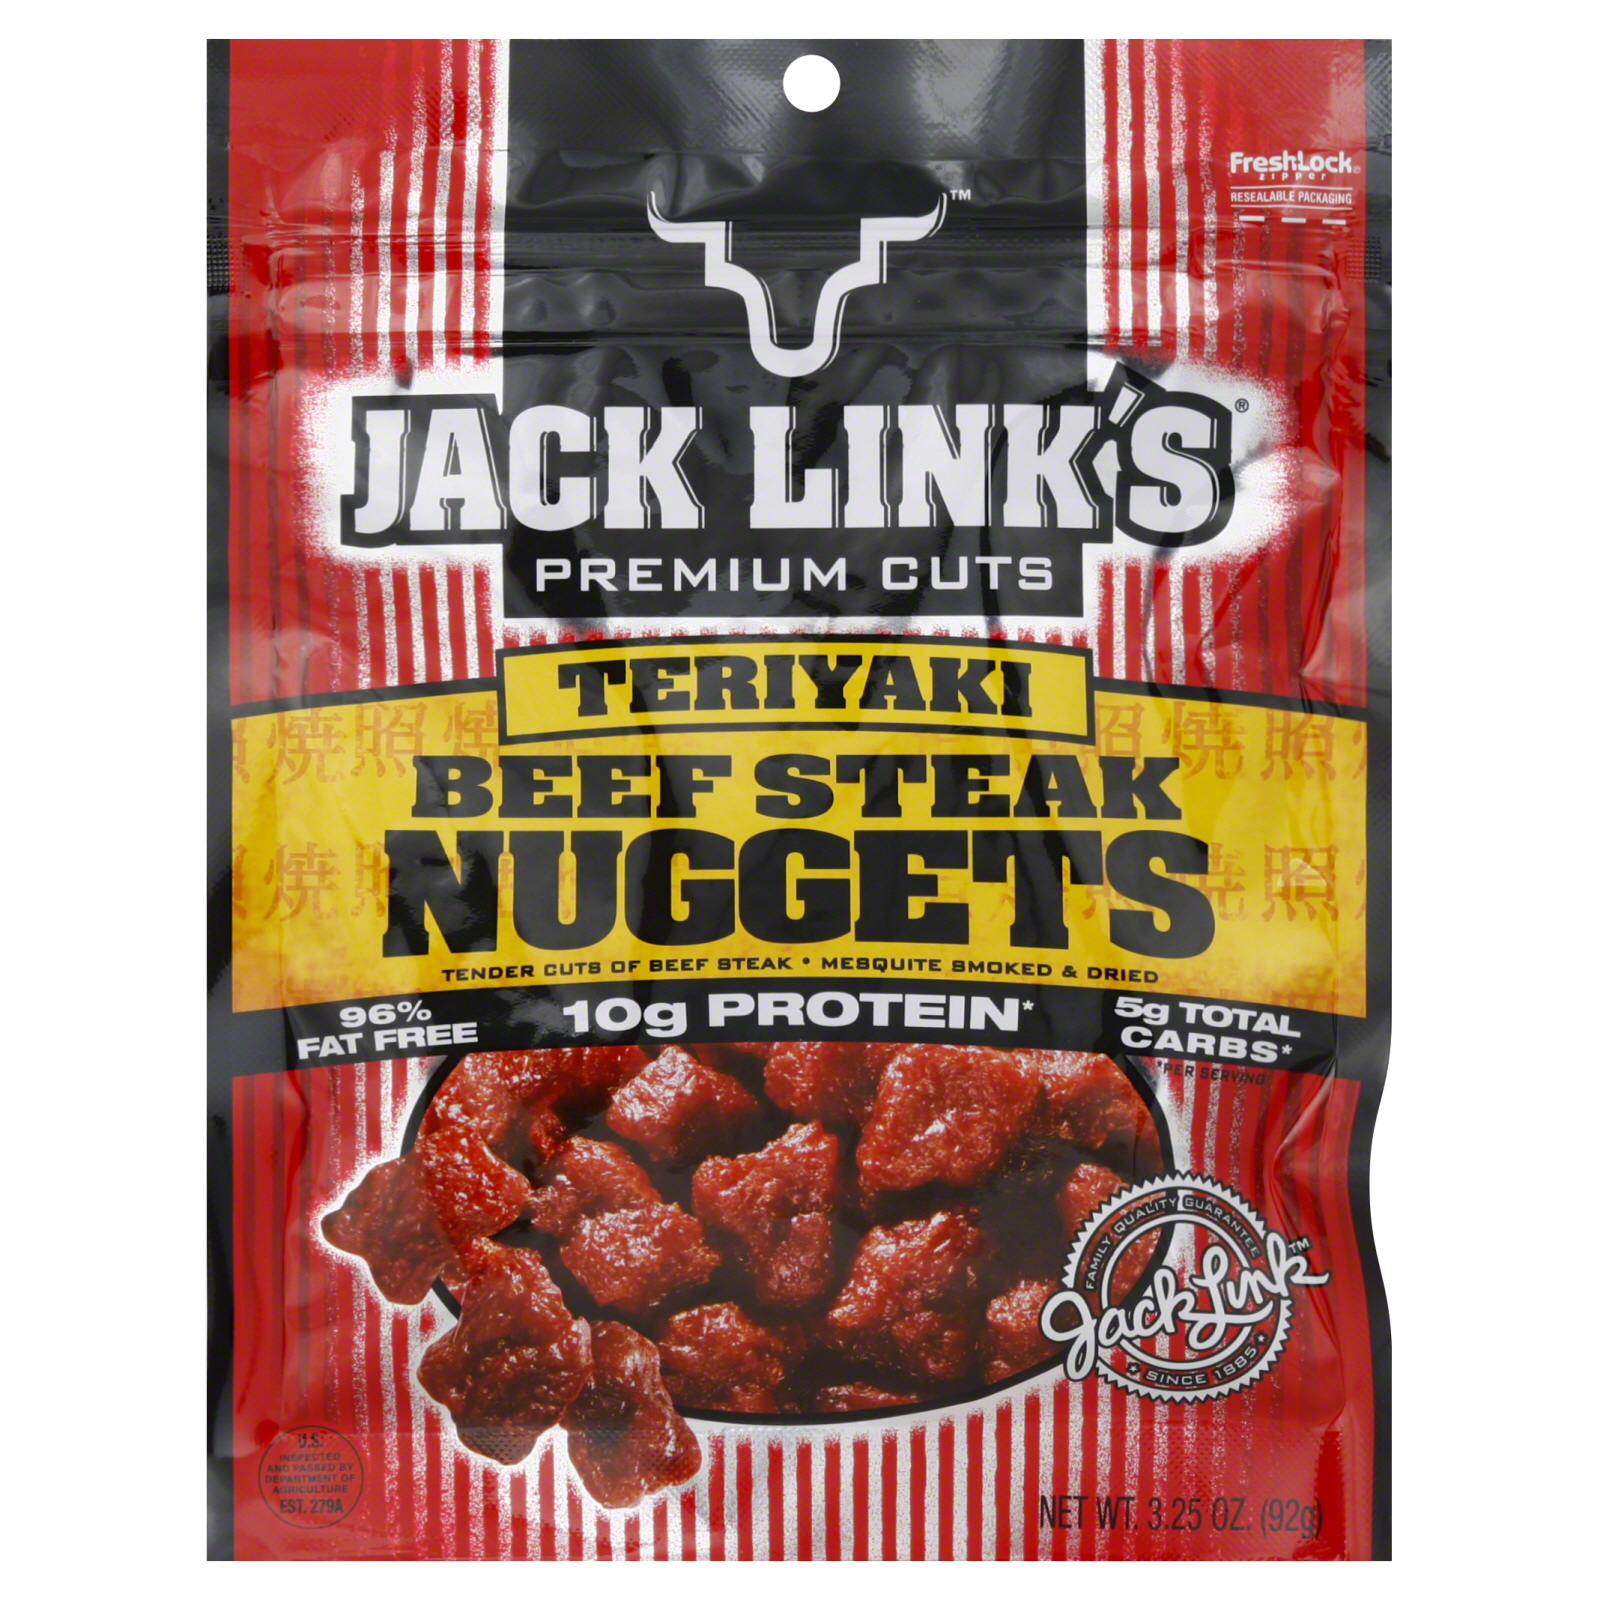 Jack Link's Premium Cuts Nuggets, Beef Steak, Teriyaki, 3.25 oz (92 g)